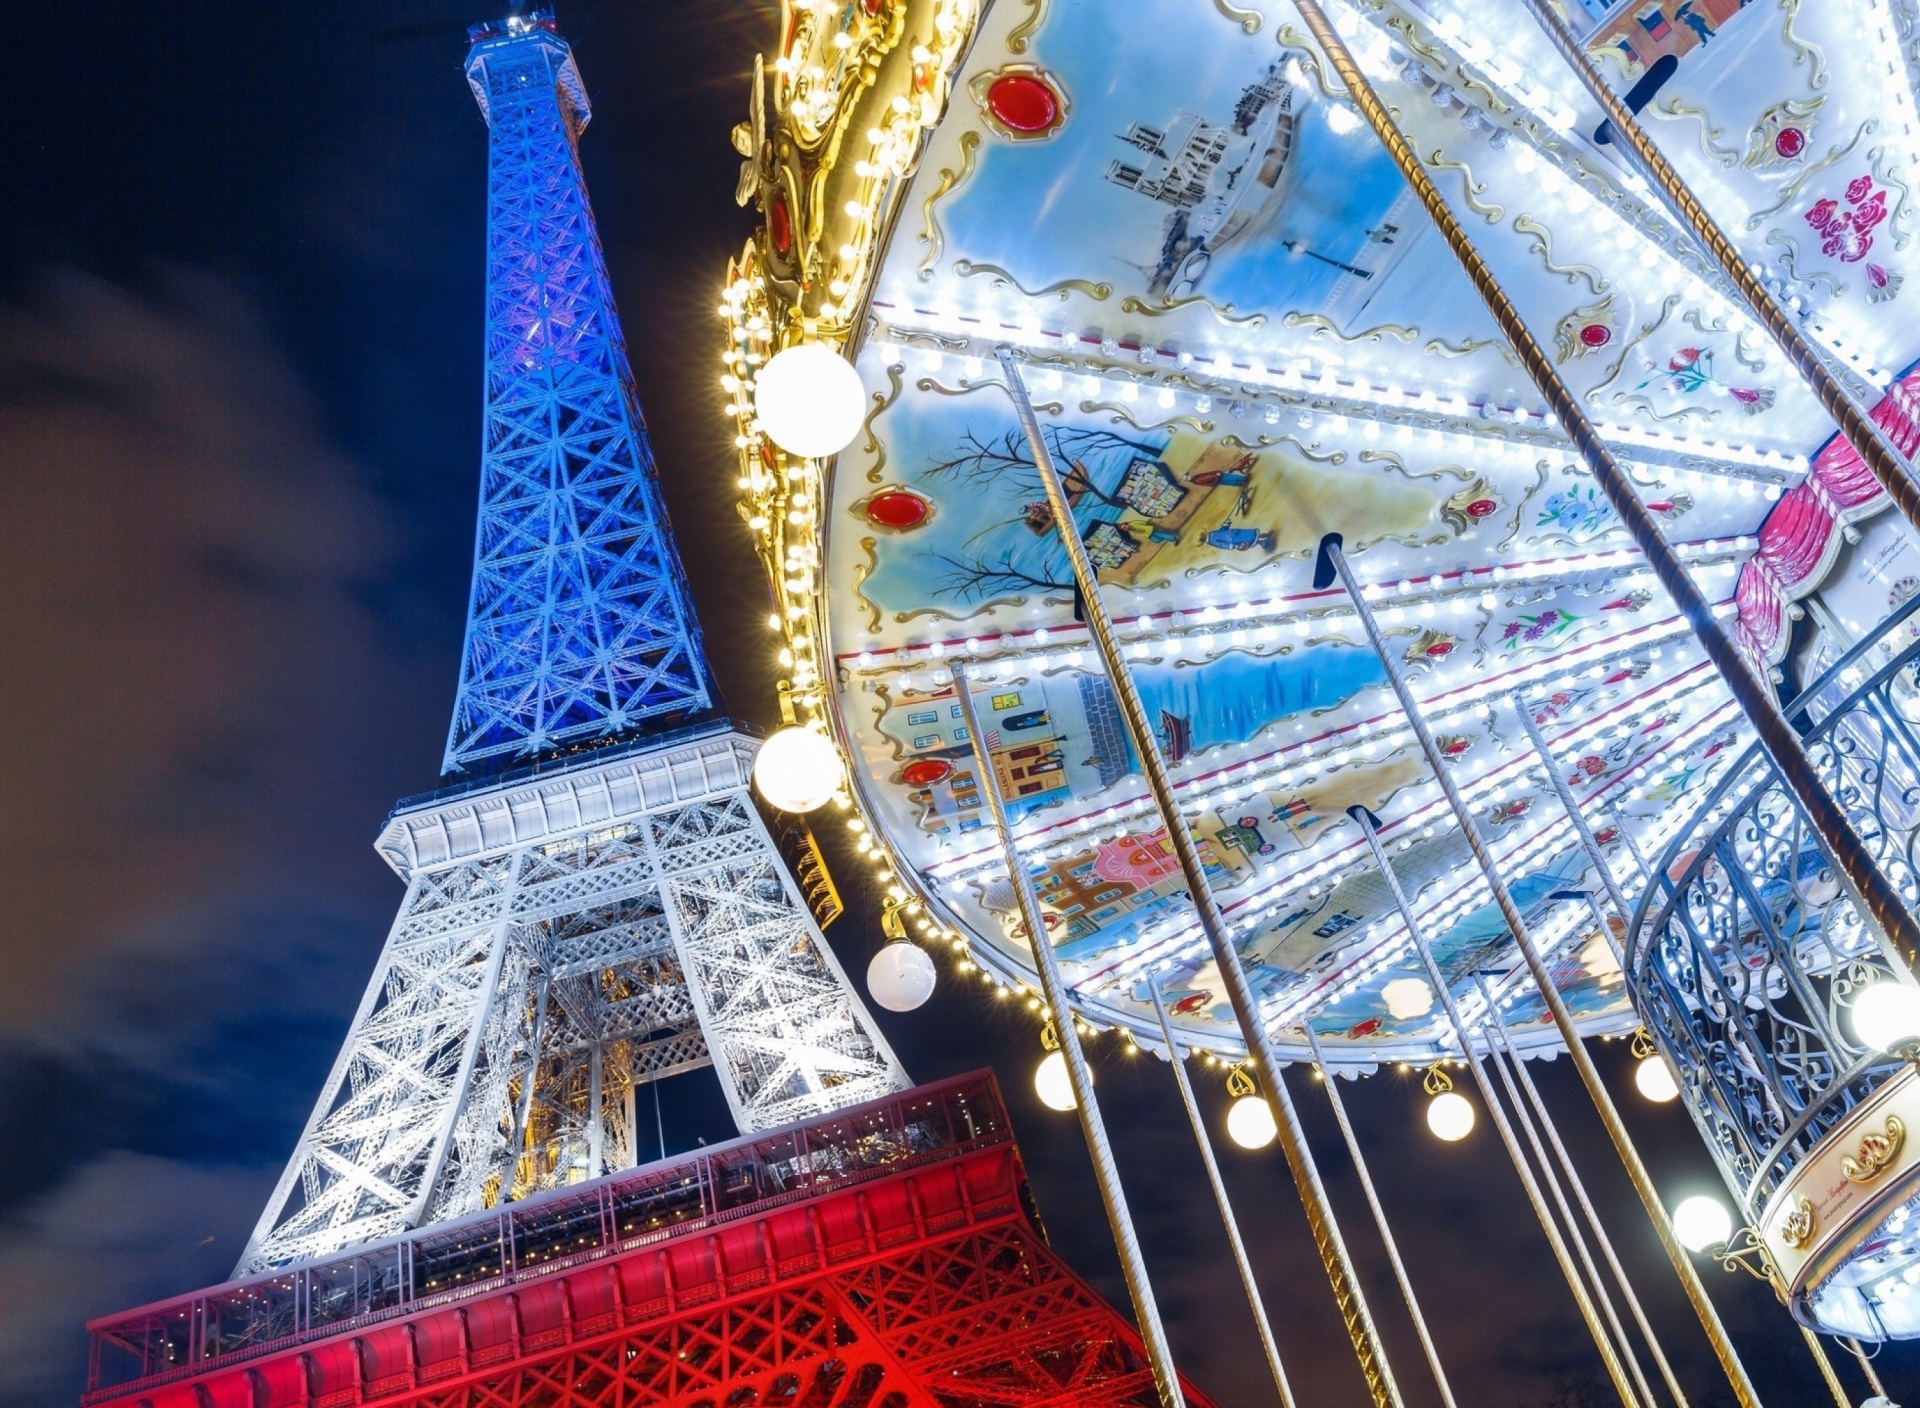 Обои Eiffel Tower in Paris and Carousel 1920x1408